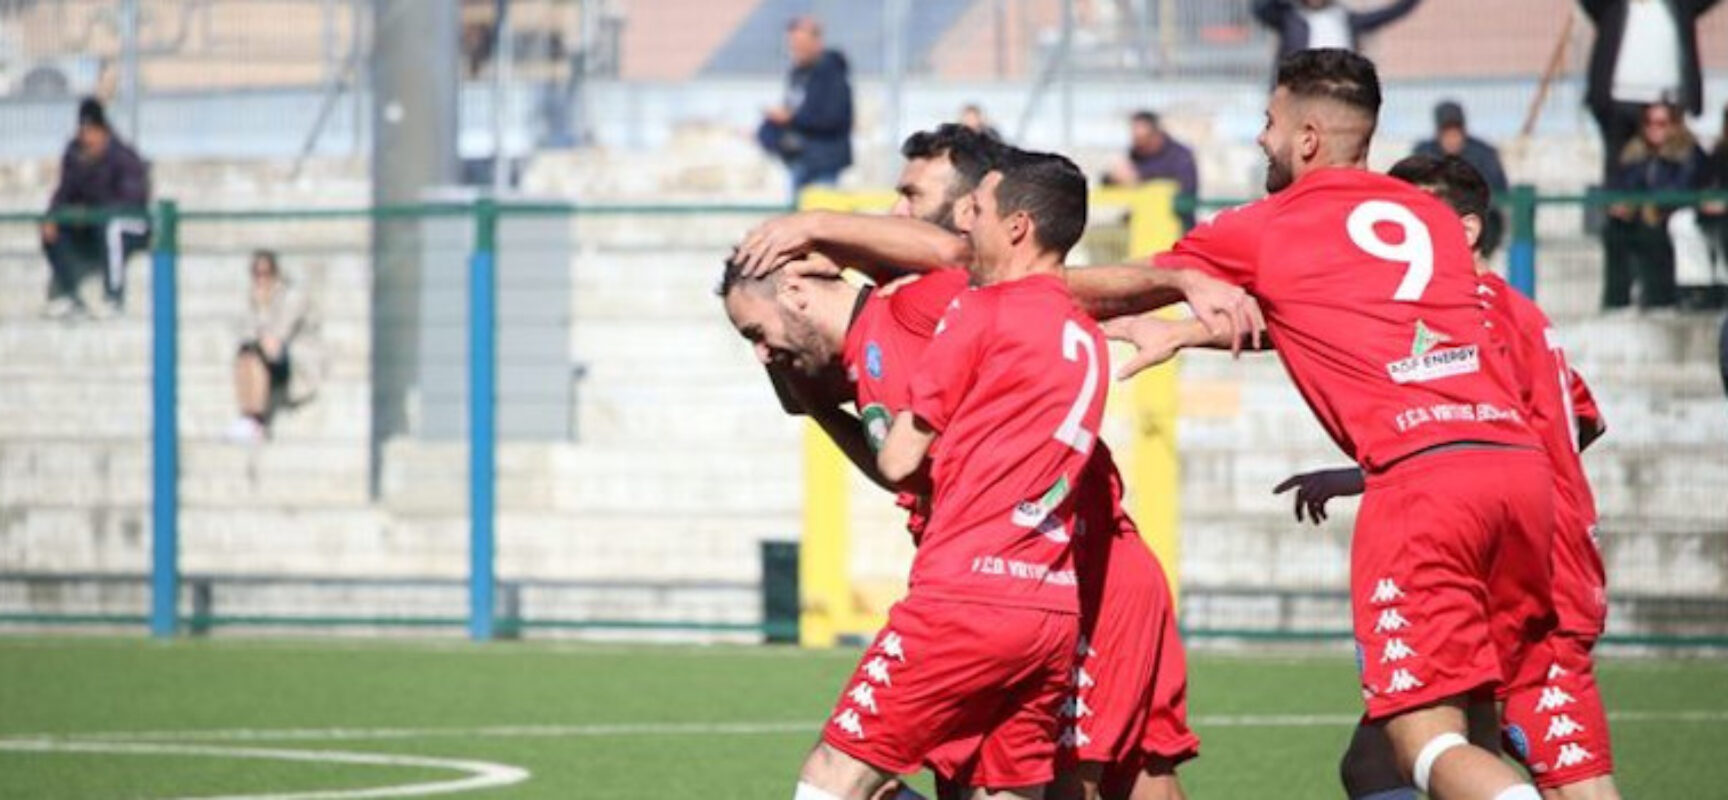 Calcio regionale, Don Uva contro Real San Giovanni, Virtus Bisceglie ospita il Sammarco